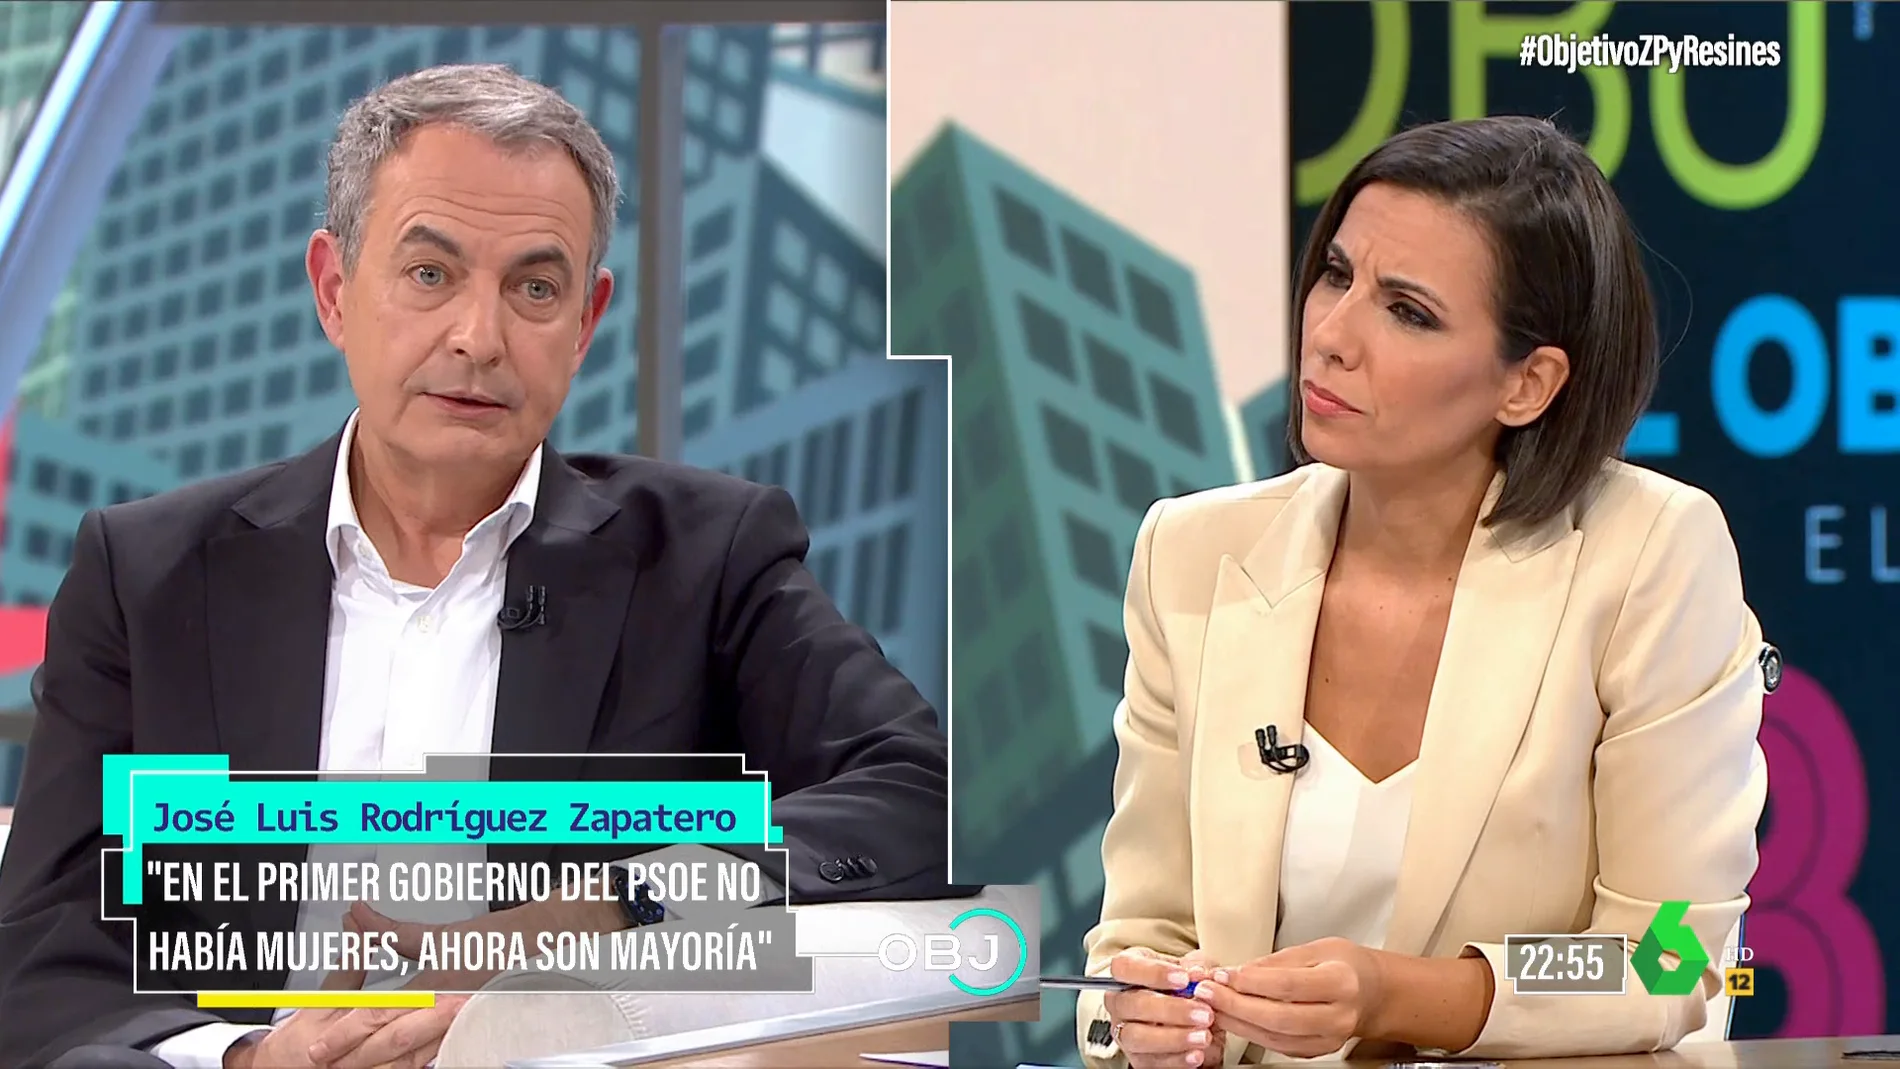 Zapatero descarta una crisis como la de 2008: "No va a parecerse absoluto"